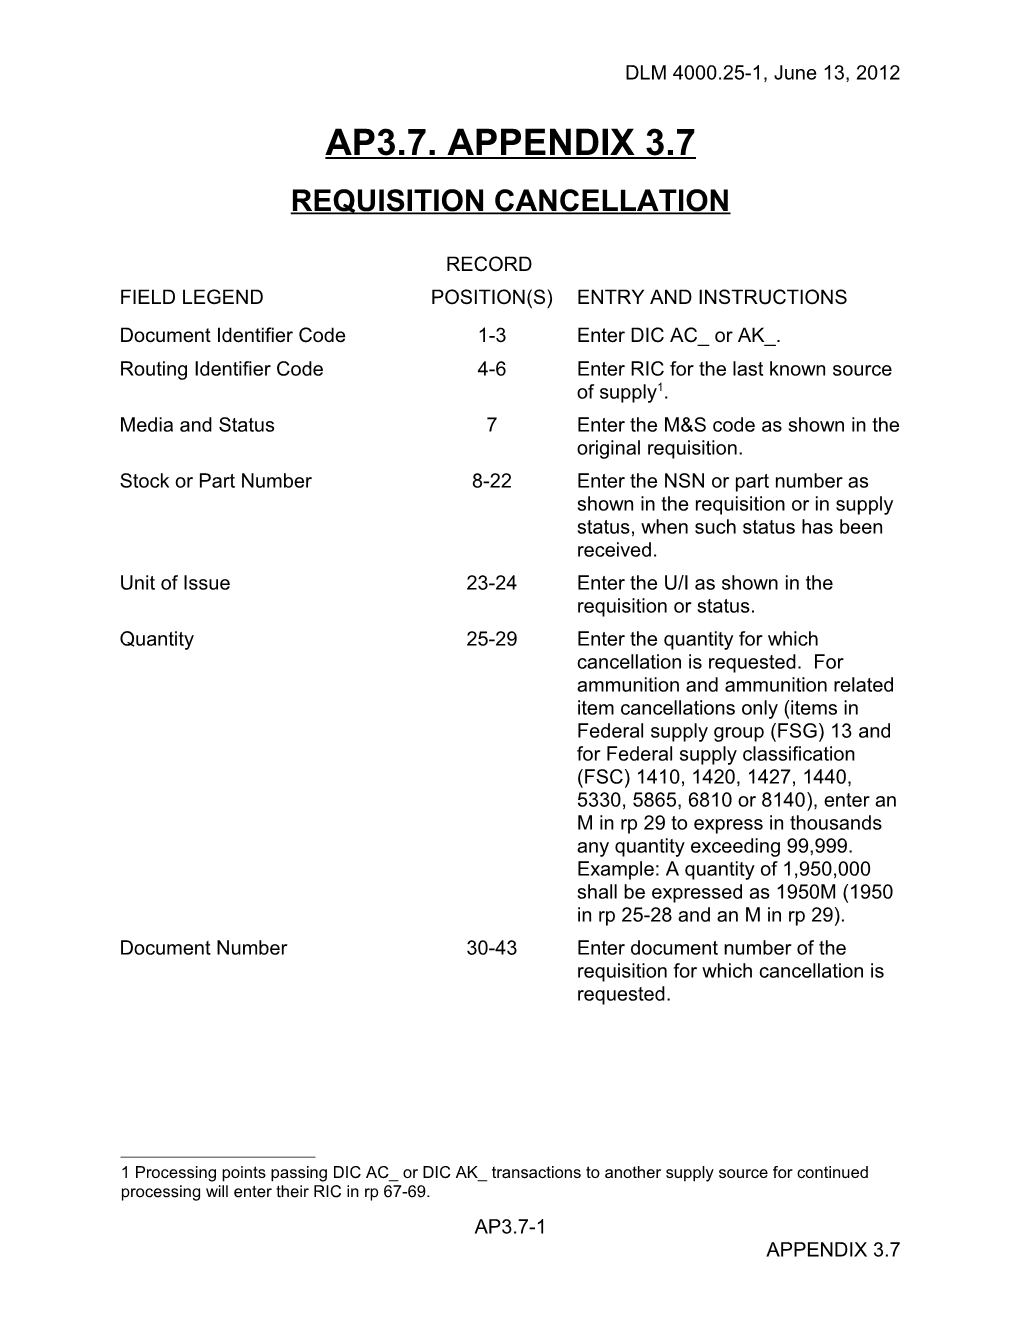 Appendix 3.7 - Requisition Cancellation